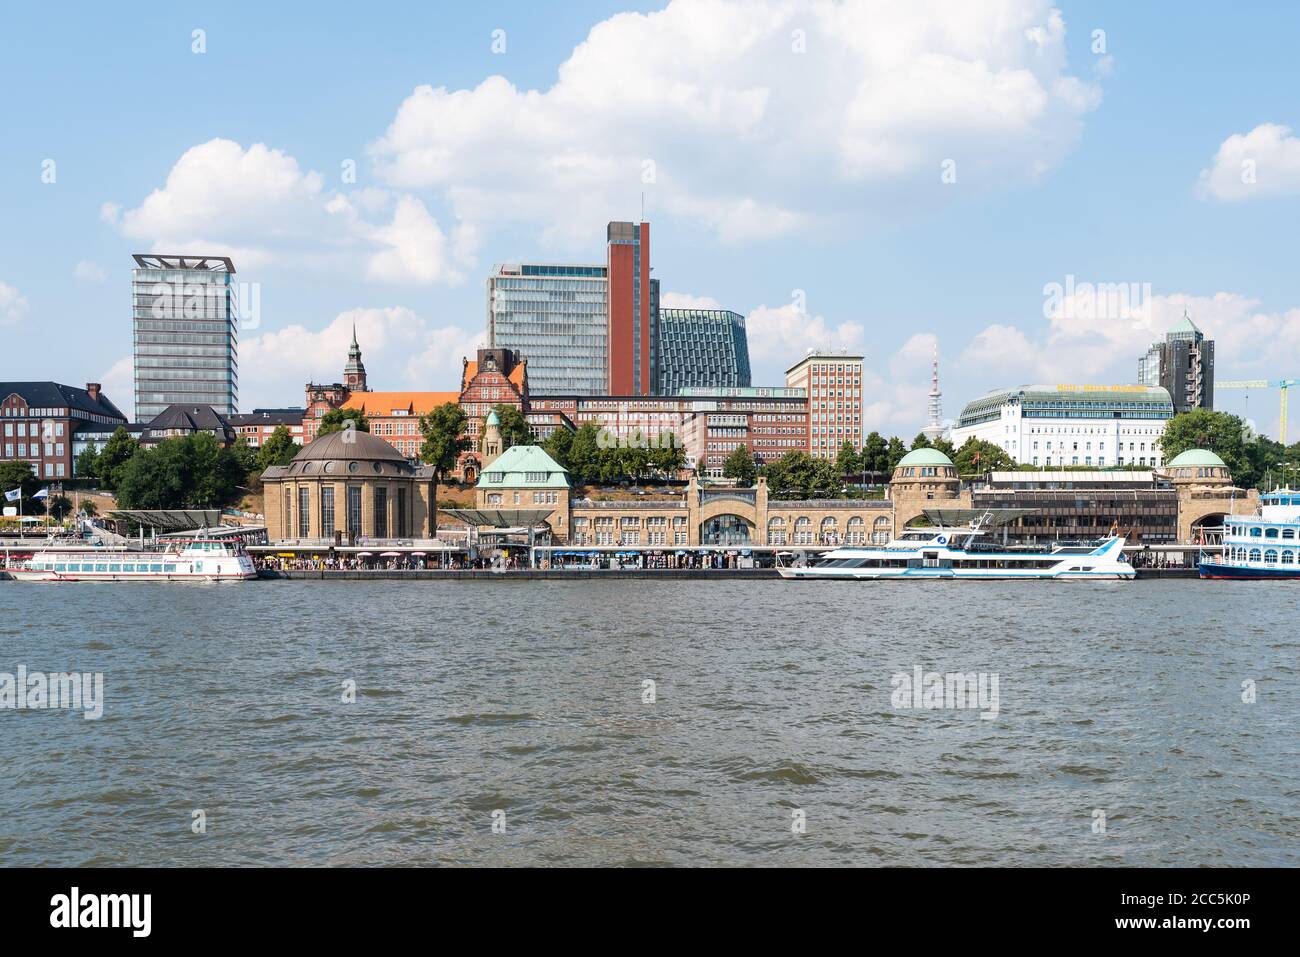 2020-08-16 Hamburg, Deutschland: Blick am Wasser auf die berühmten St. Pauli Piers und die Elbe vor blauem Sommerhimmel Stockfoto